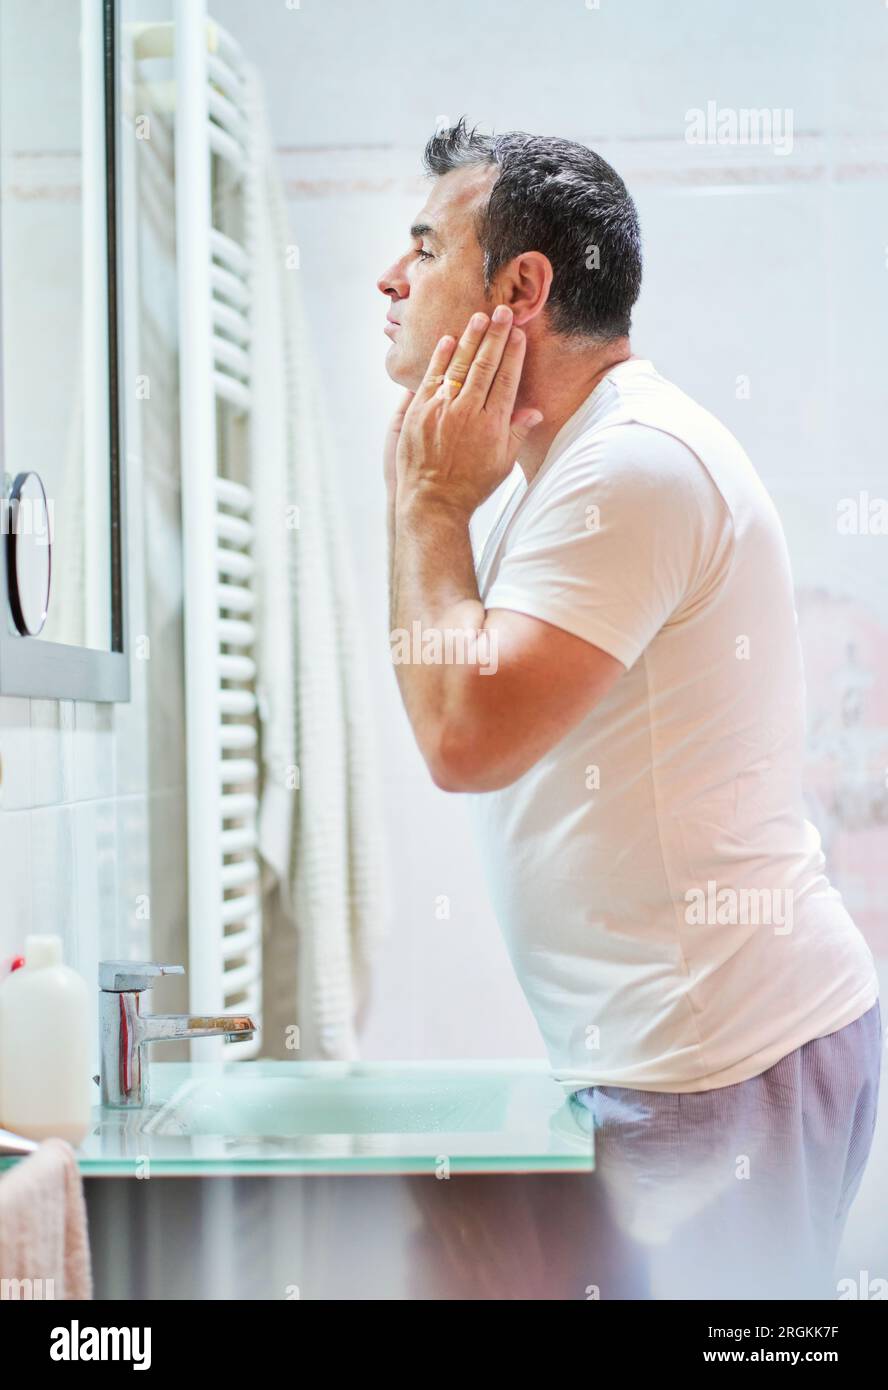 Vue latérale d'un homme mature portant des vêtements domestiques caressant  le visage avec de la crème pendant la routine hygiénique dans la salle de  bain tout en se regardant dans le miroir